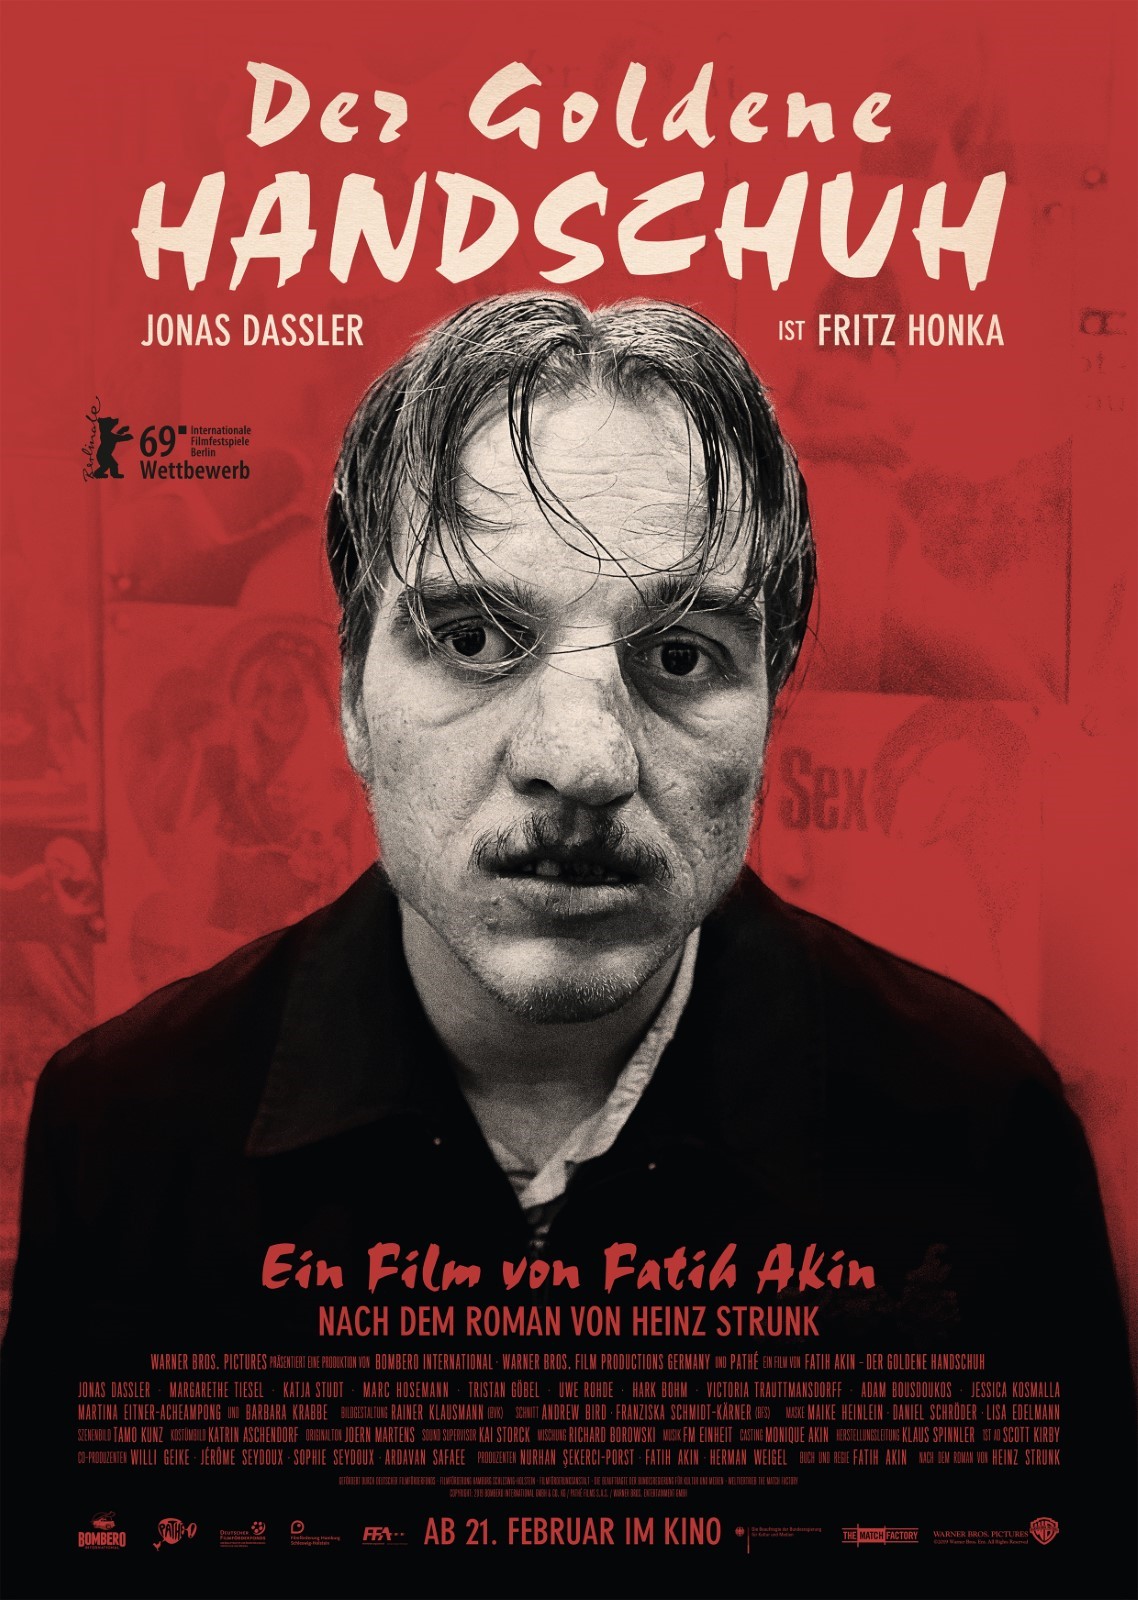 Le cinéma allemand par genre : SF, Fantastique, Horreur